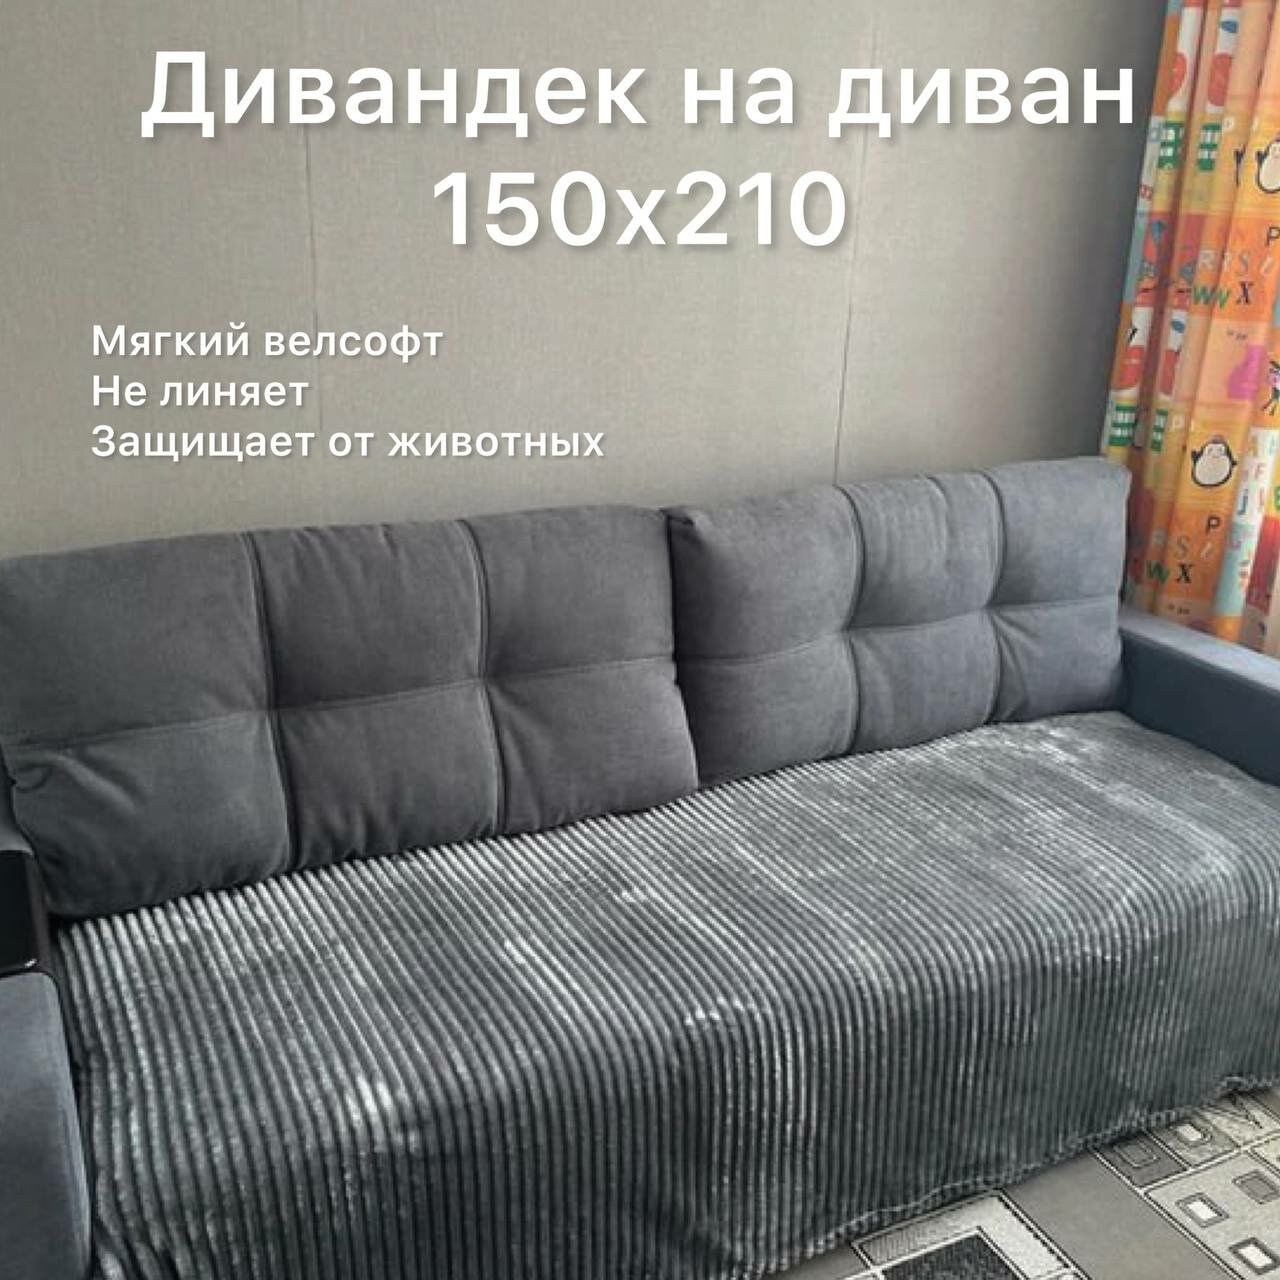 Дивандек темно-серый Texrus для дивана 150х200